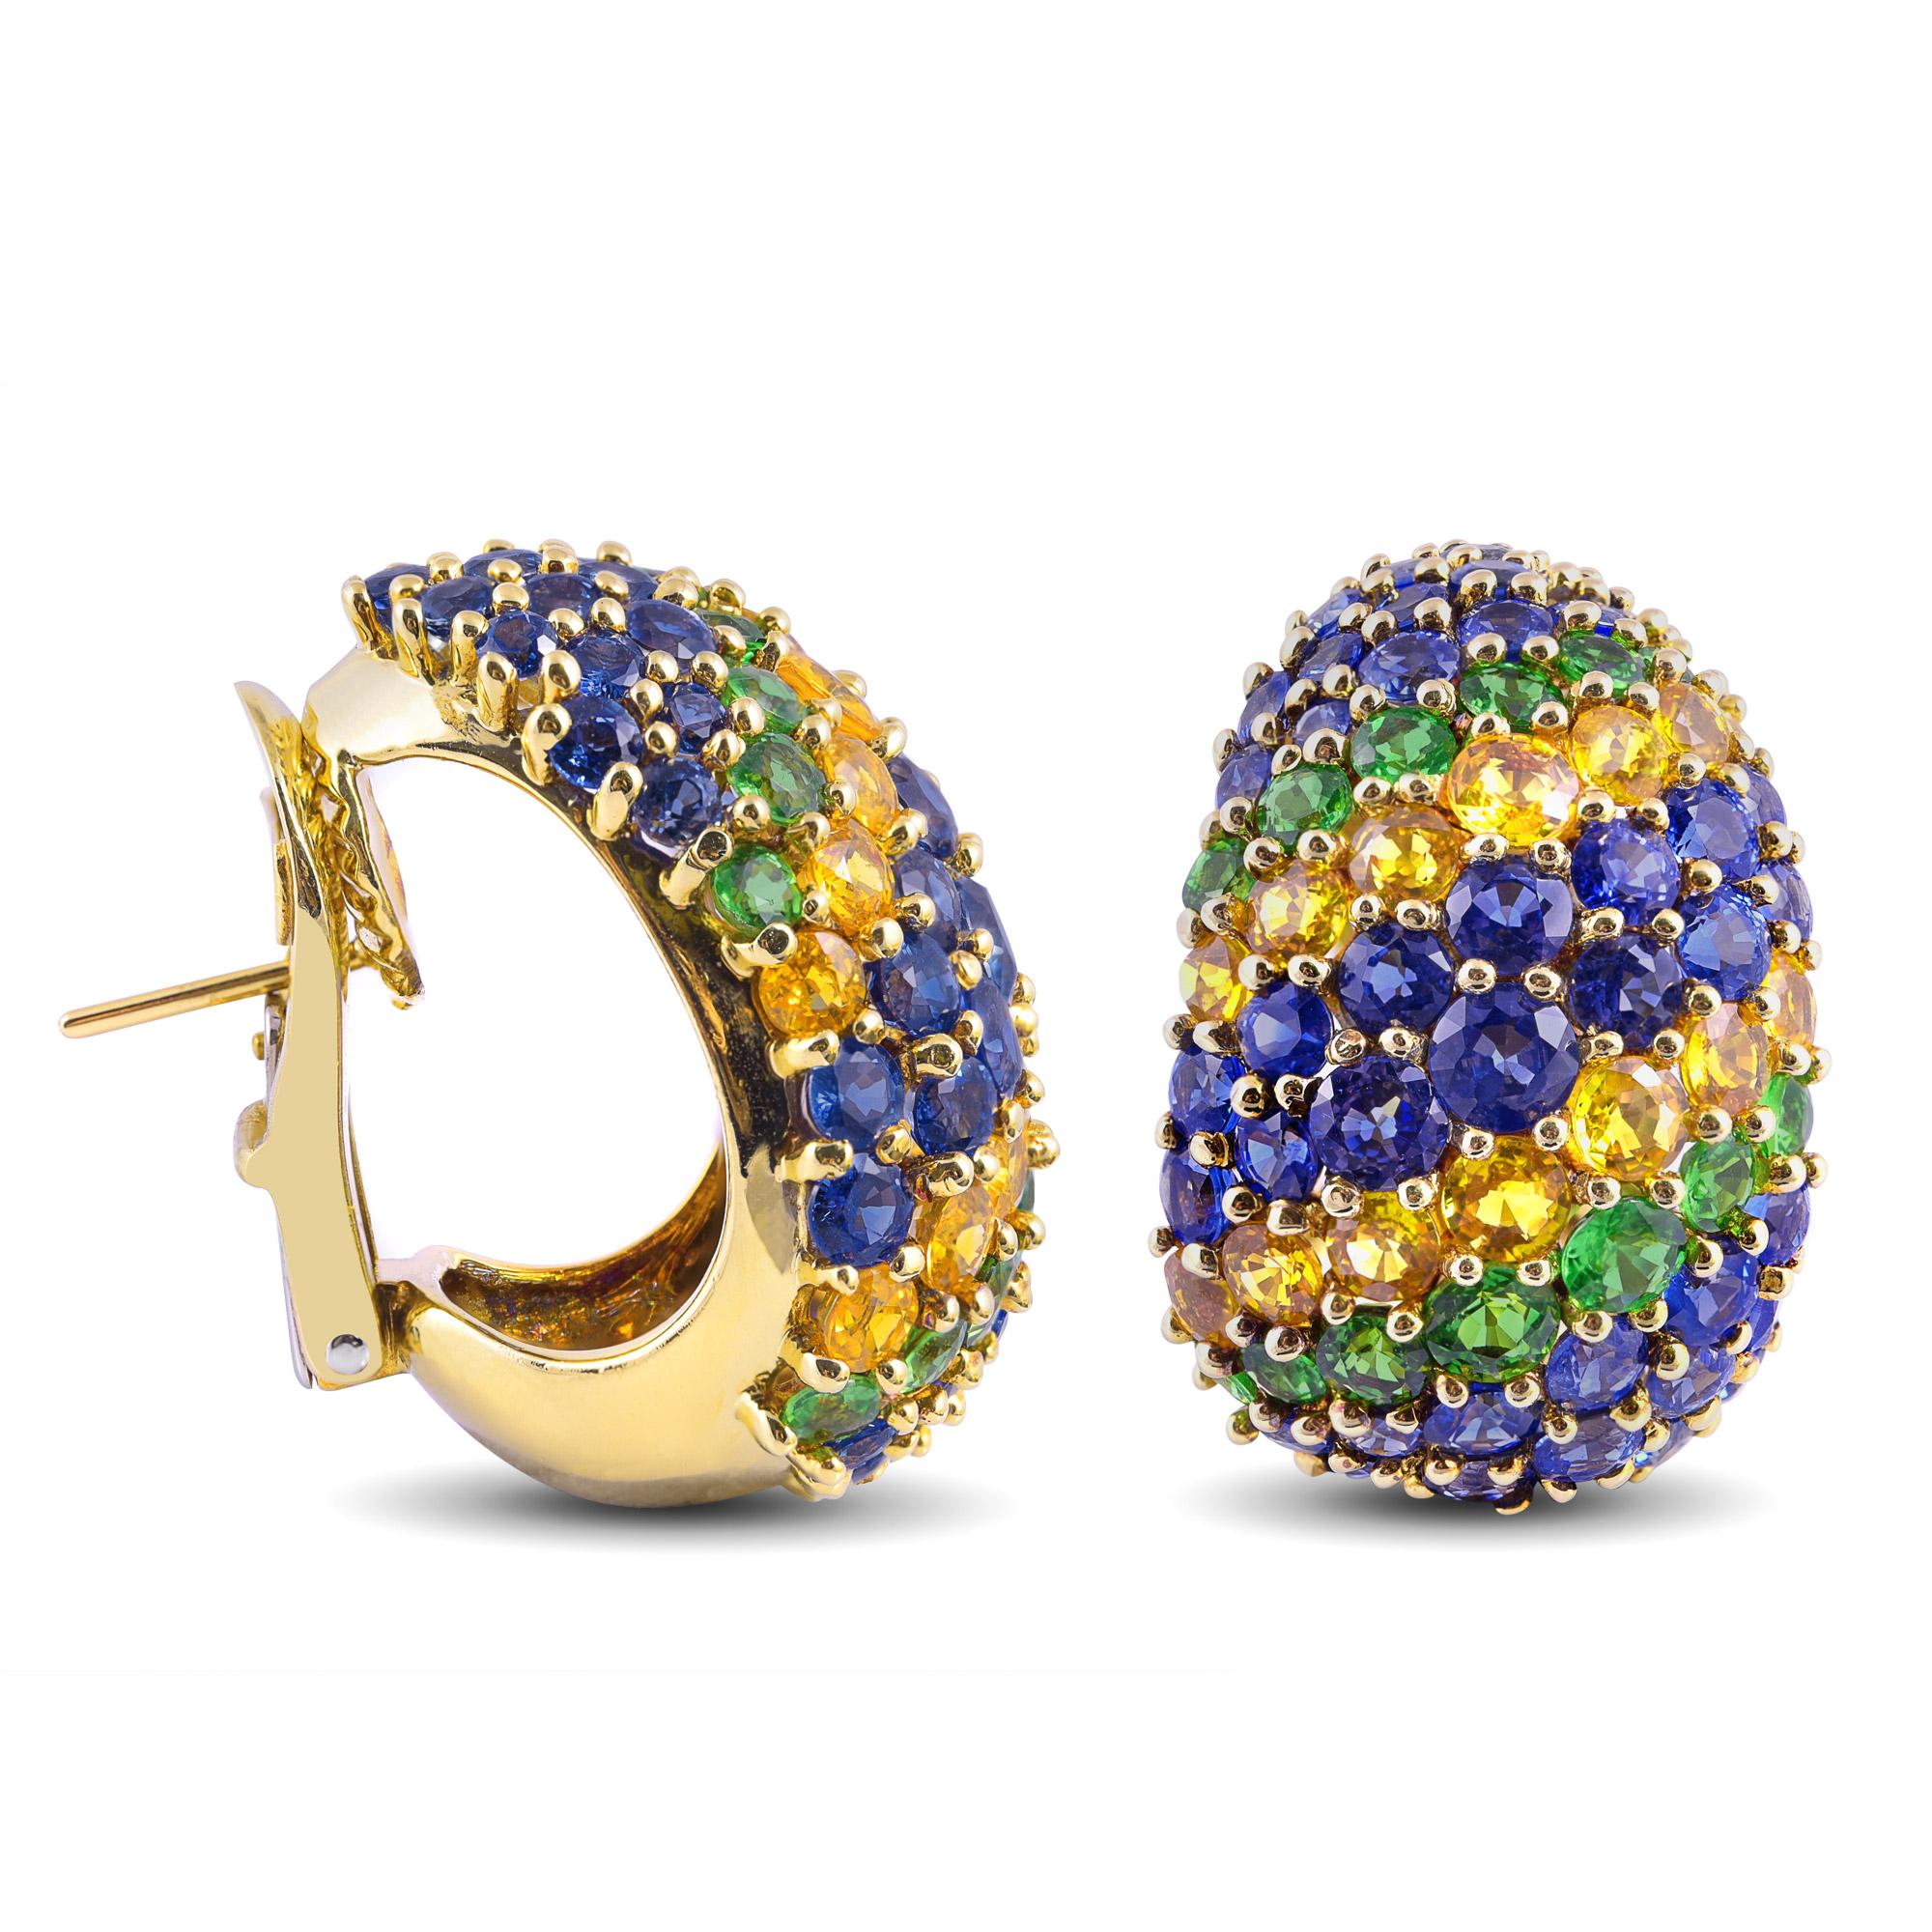 Tauchen Sie ein in ein lebendiges Farbenspiel mit diesen Ohrringen des Designers Jean Vitau, die sorgfältig aus schimmerndem 18-karätigem Gelbgold gefertigt sind. Das fantasievolle Design zeichnet sich durch blaue und gelbe Saphire im Rundschliff